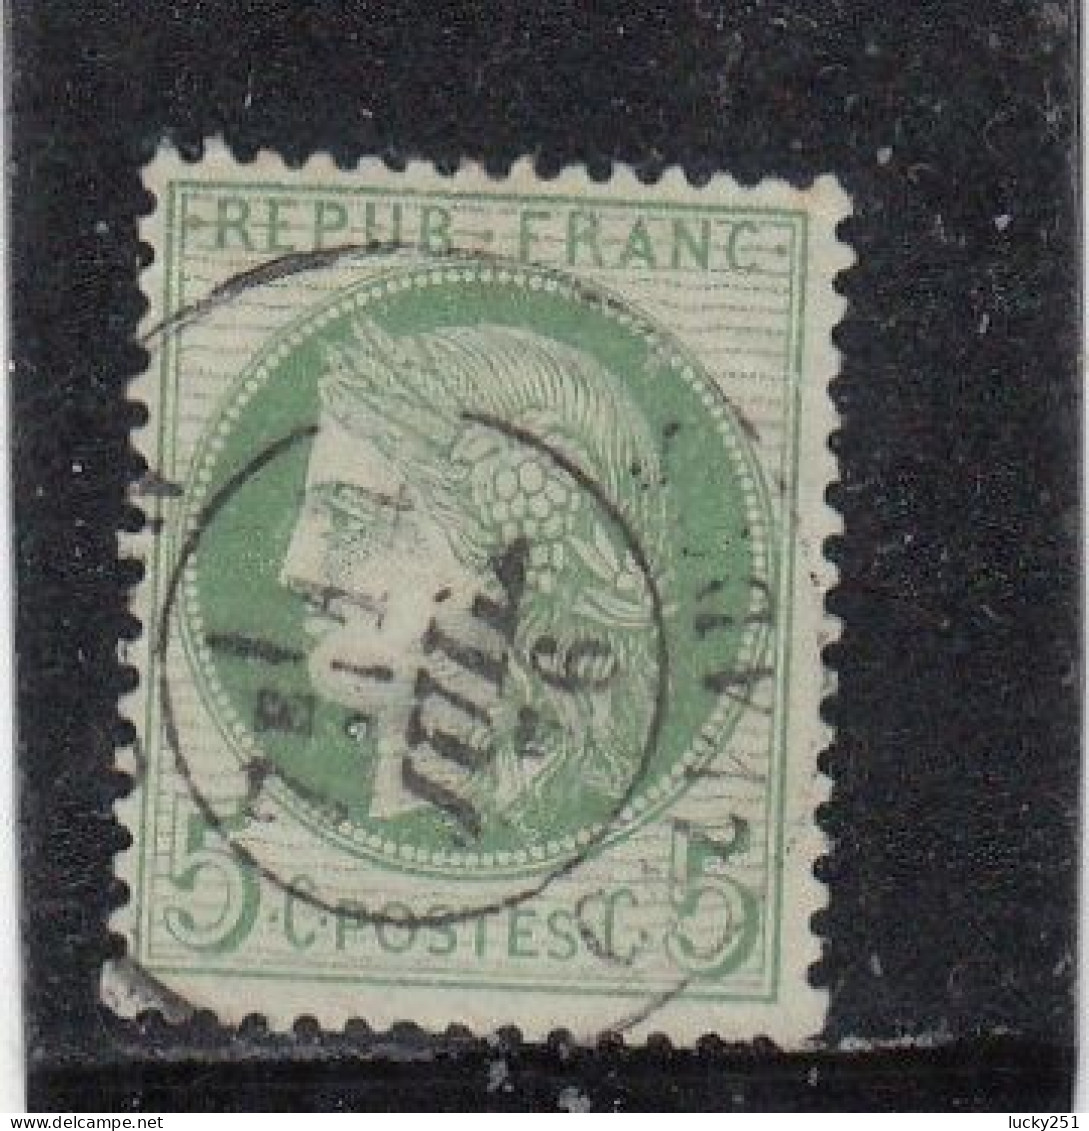 France - Année 1871/75 - N°YT 53 - Type Cérès - Oblitération Cachet à Date - 5c Vert Jaune S. Azuré - 1871-1875 Cérès